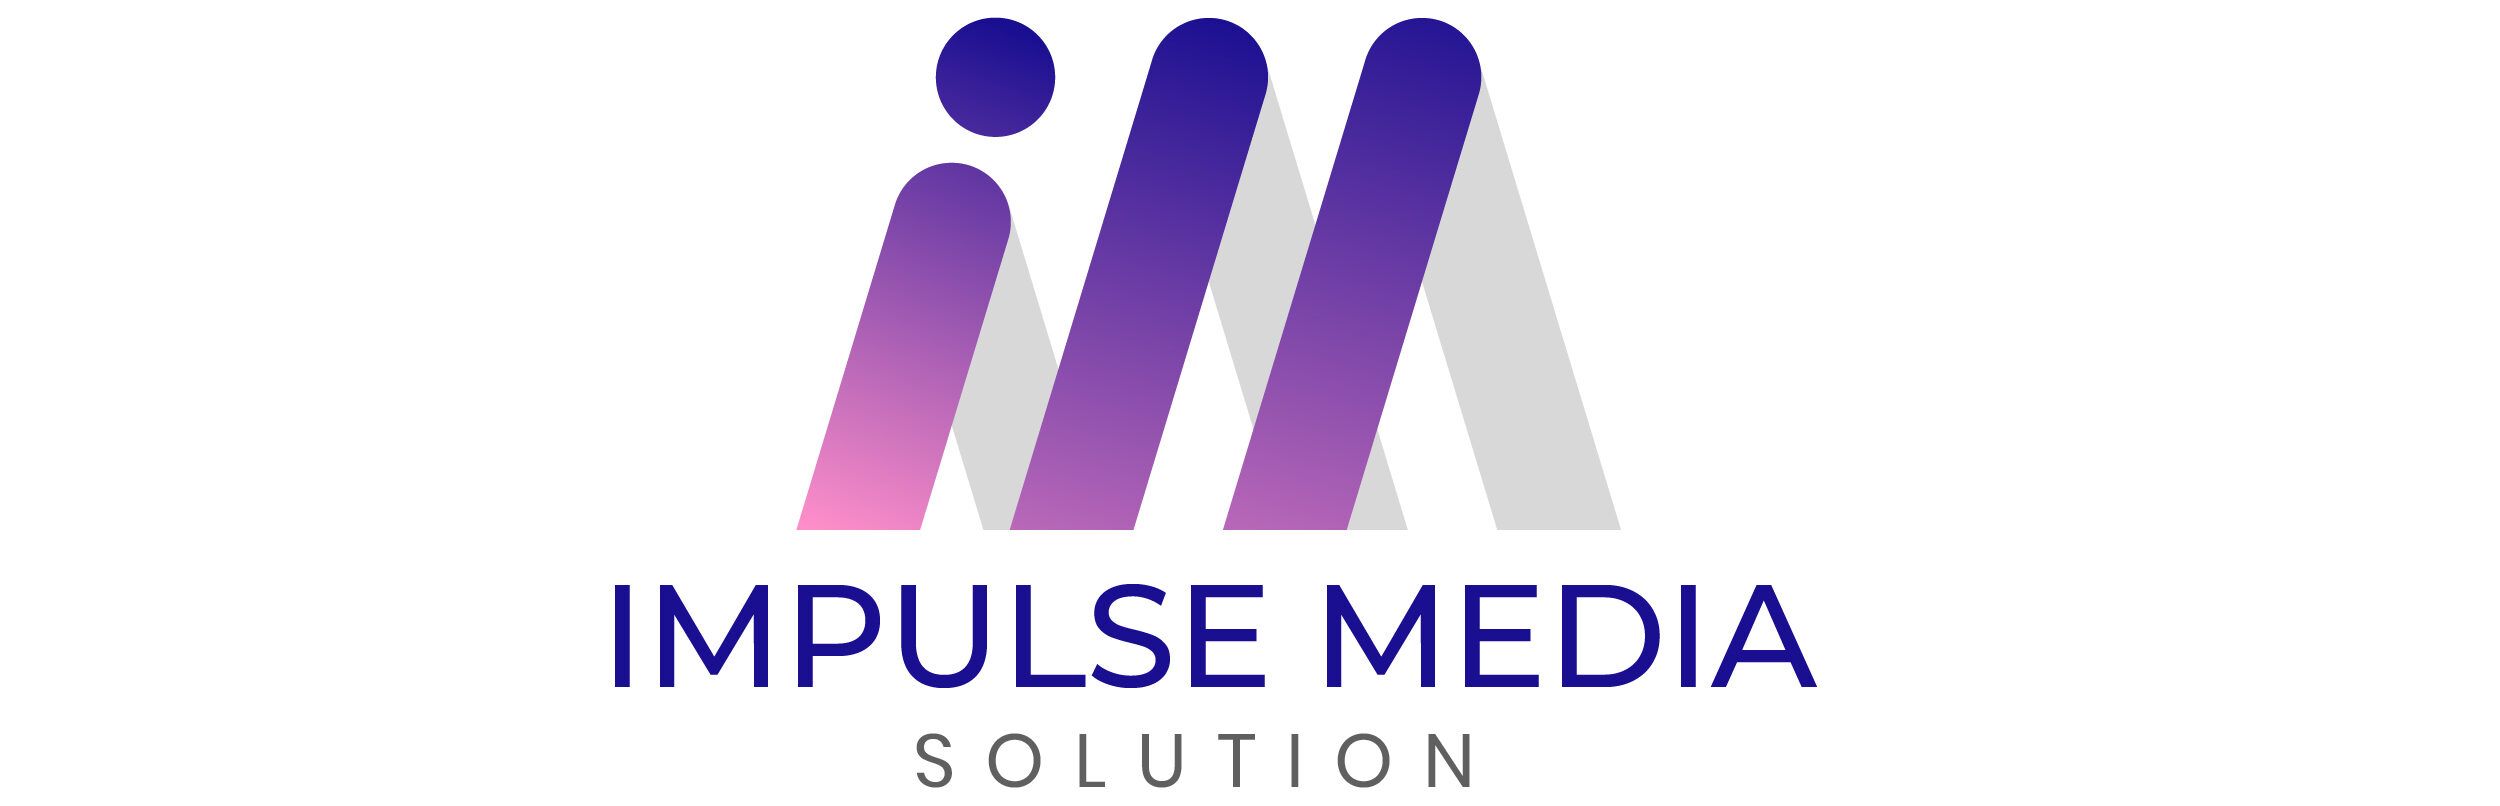 impulse media solution